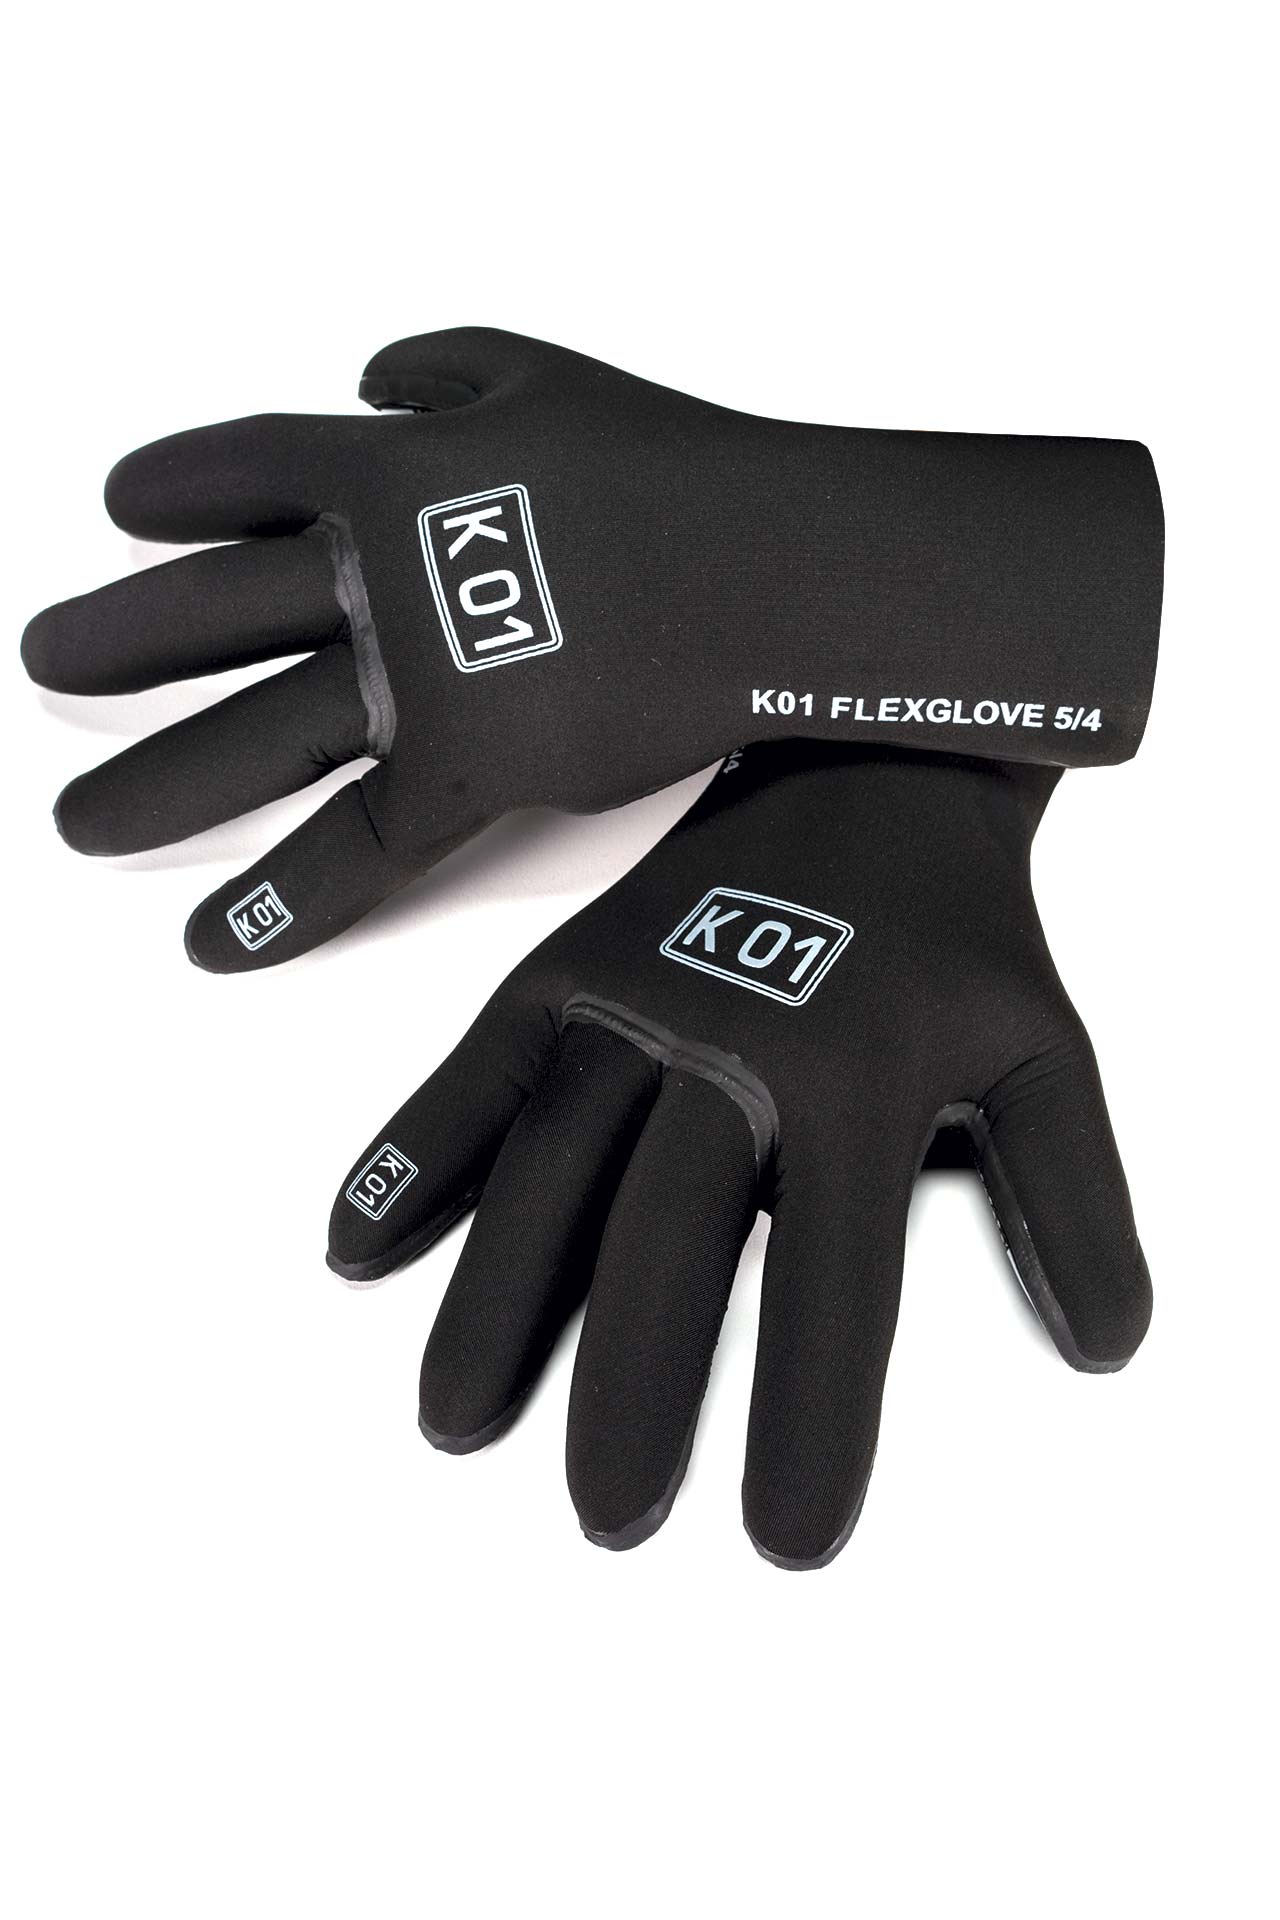 K01 K-01 Gloves for Scuba Diving